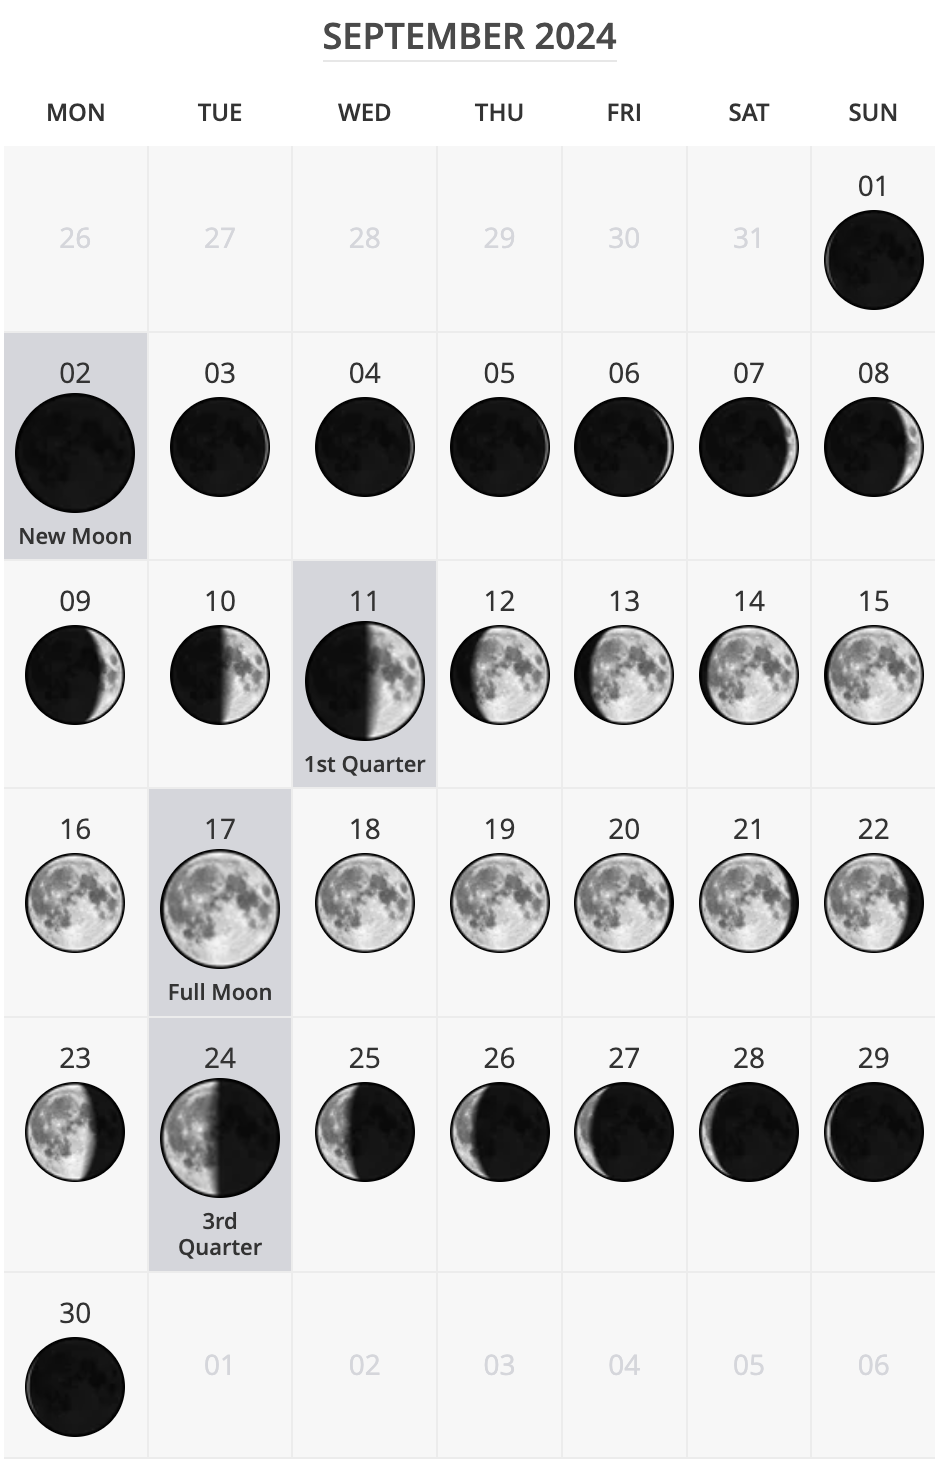 September 2024 Moon Phase